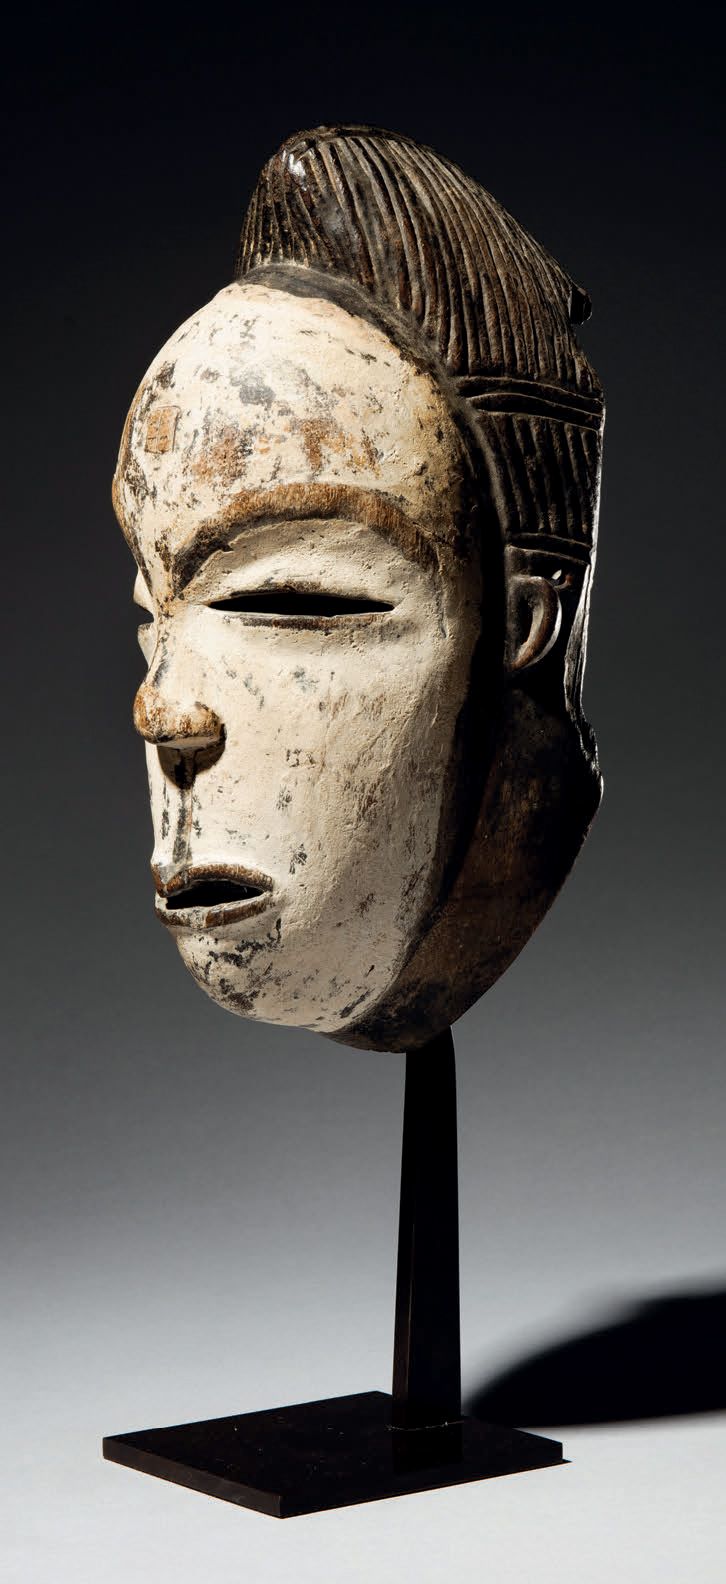 Null - NZEBI-MASKE, GABUN
Holz
H. 28 cm
Sehr alte Maske, die ein mit Kaolin bede&hellip;